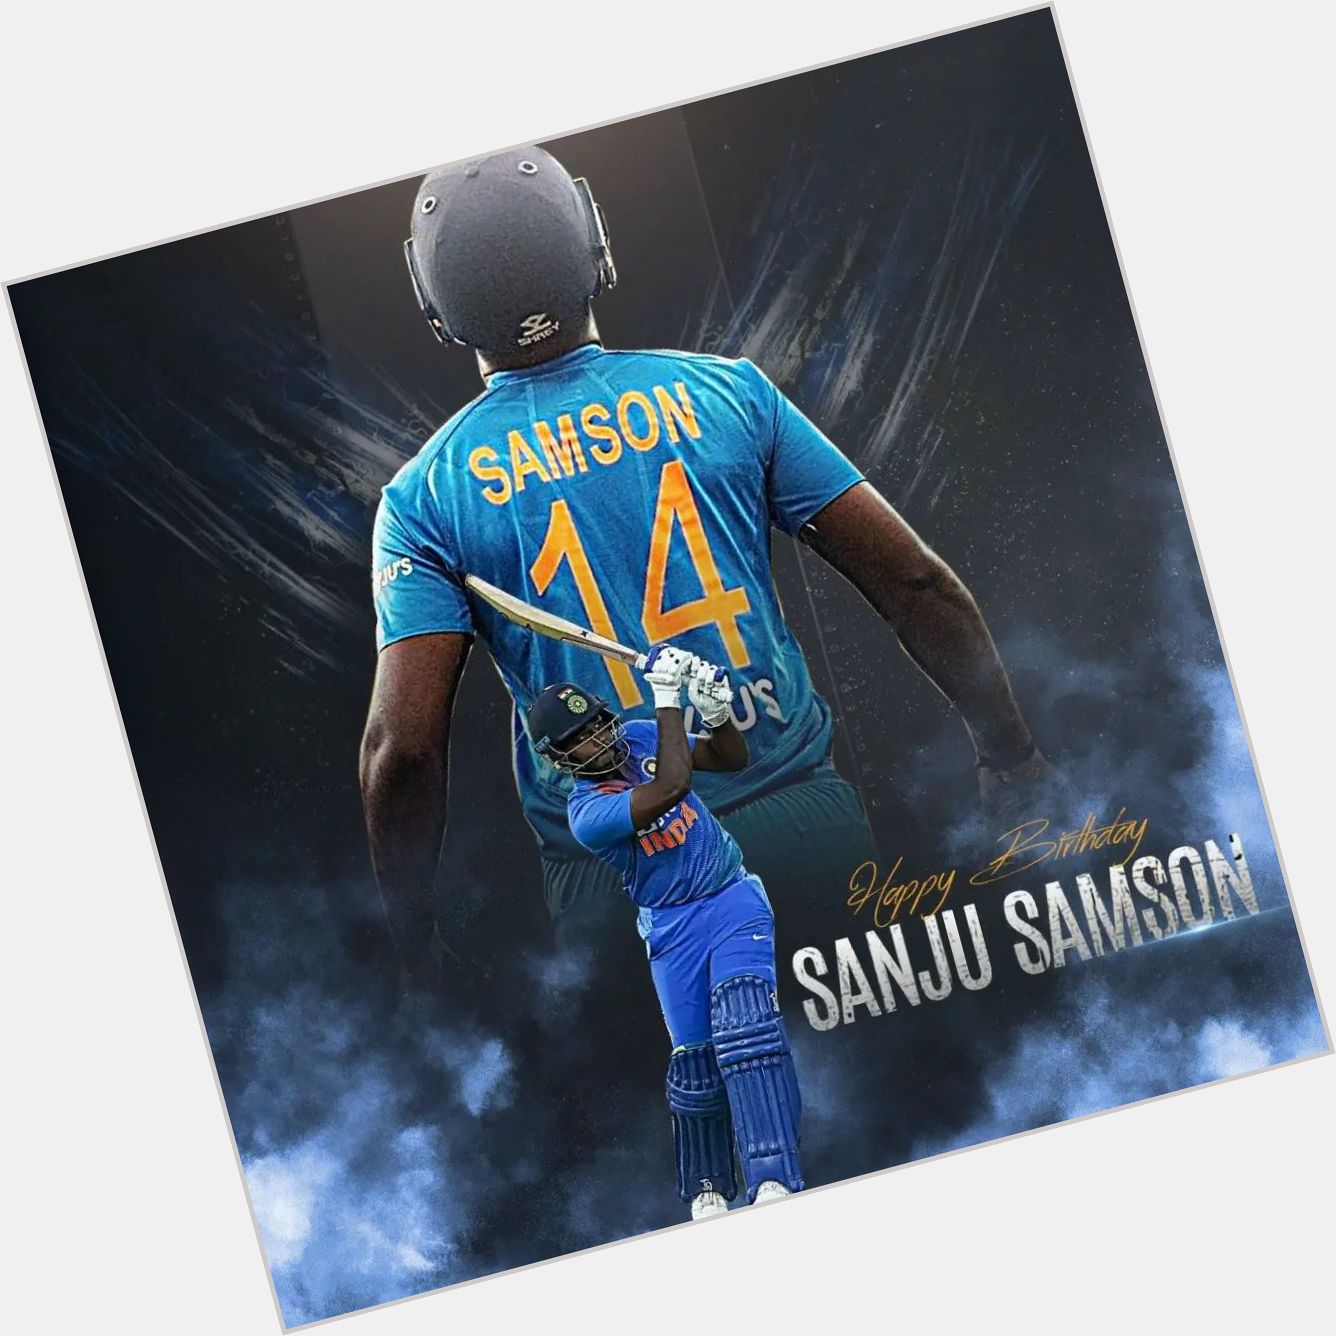   Happy Birthday Sanju Samson God bless you    